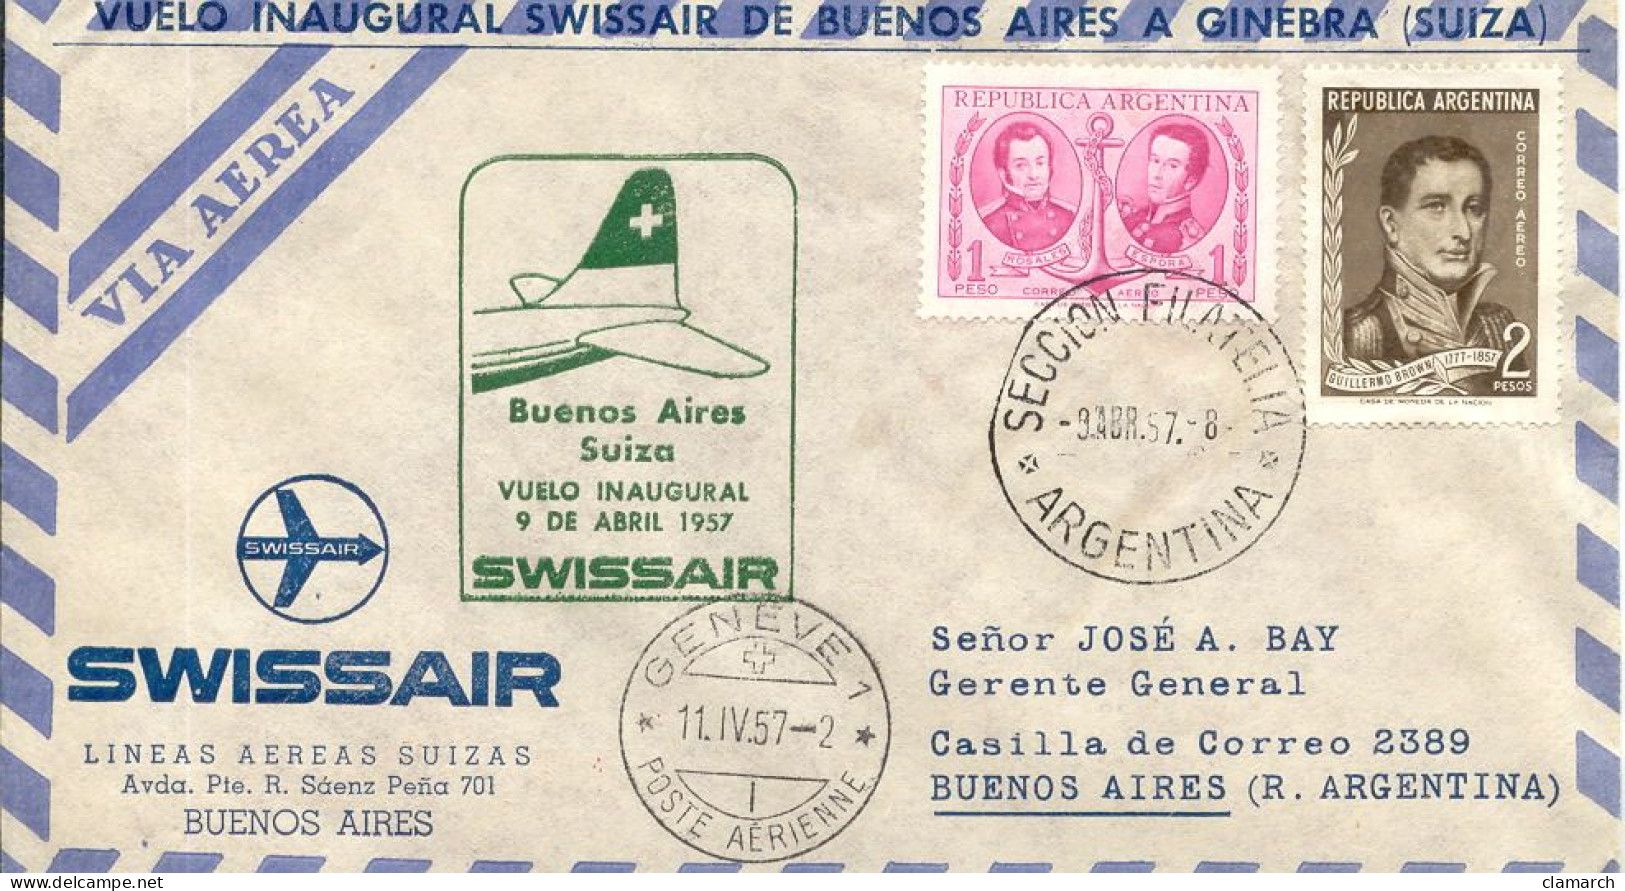 Aérophilatélie-Buenos Aires Suiza Vuelo Inaugural 9 De Abril1957 Par Swissair-cachet Seccion Filateli Du 9.4.57 - Primeros Vuelos